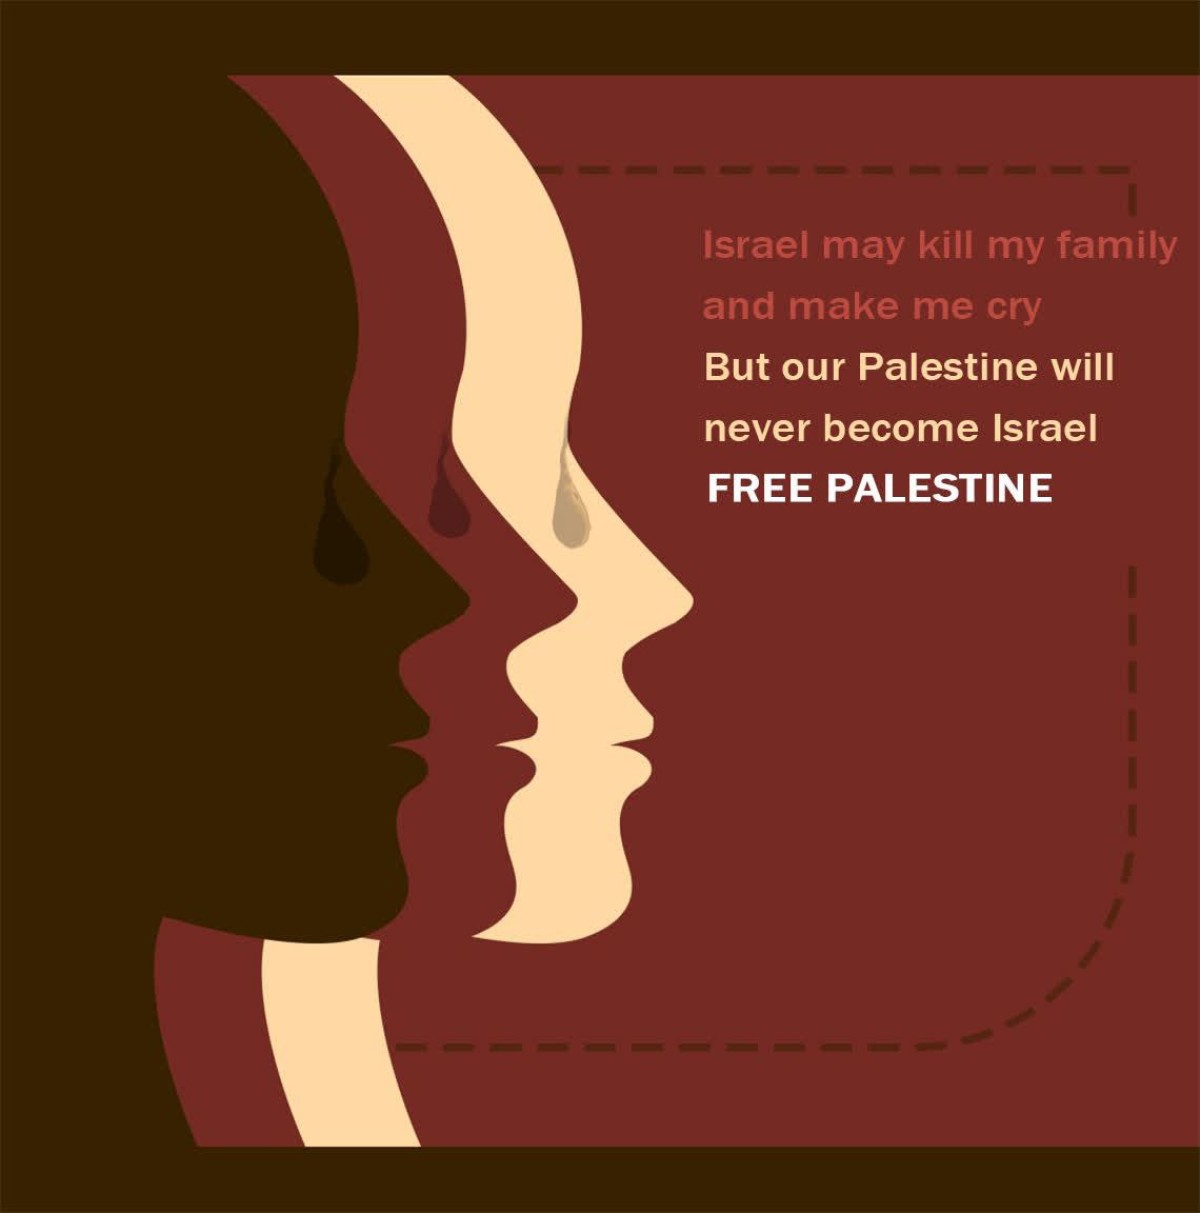 Israel may kill my family and make me cry